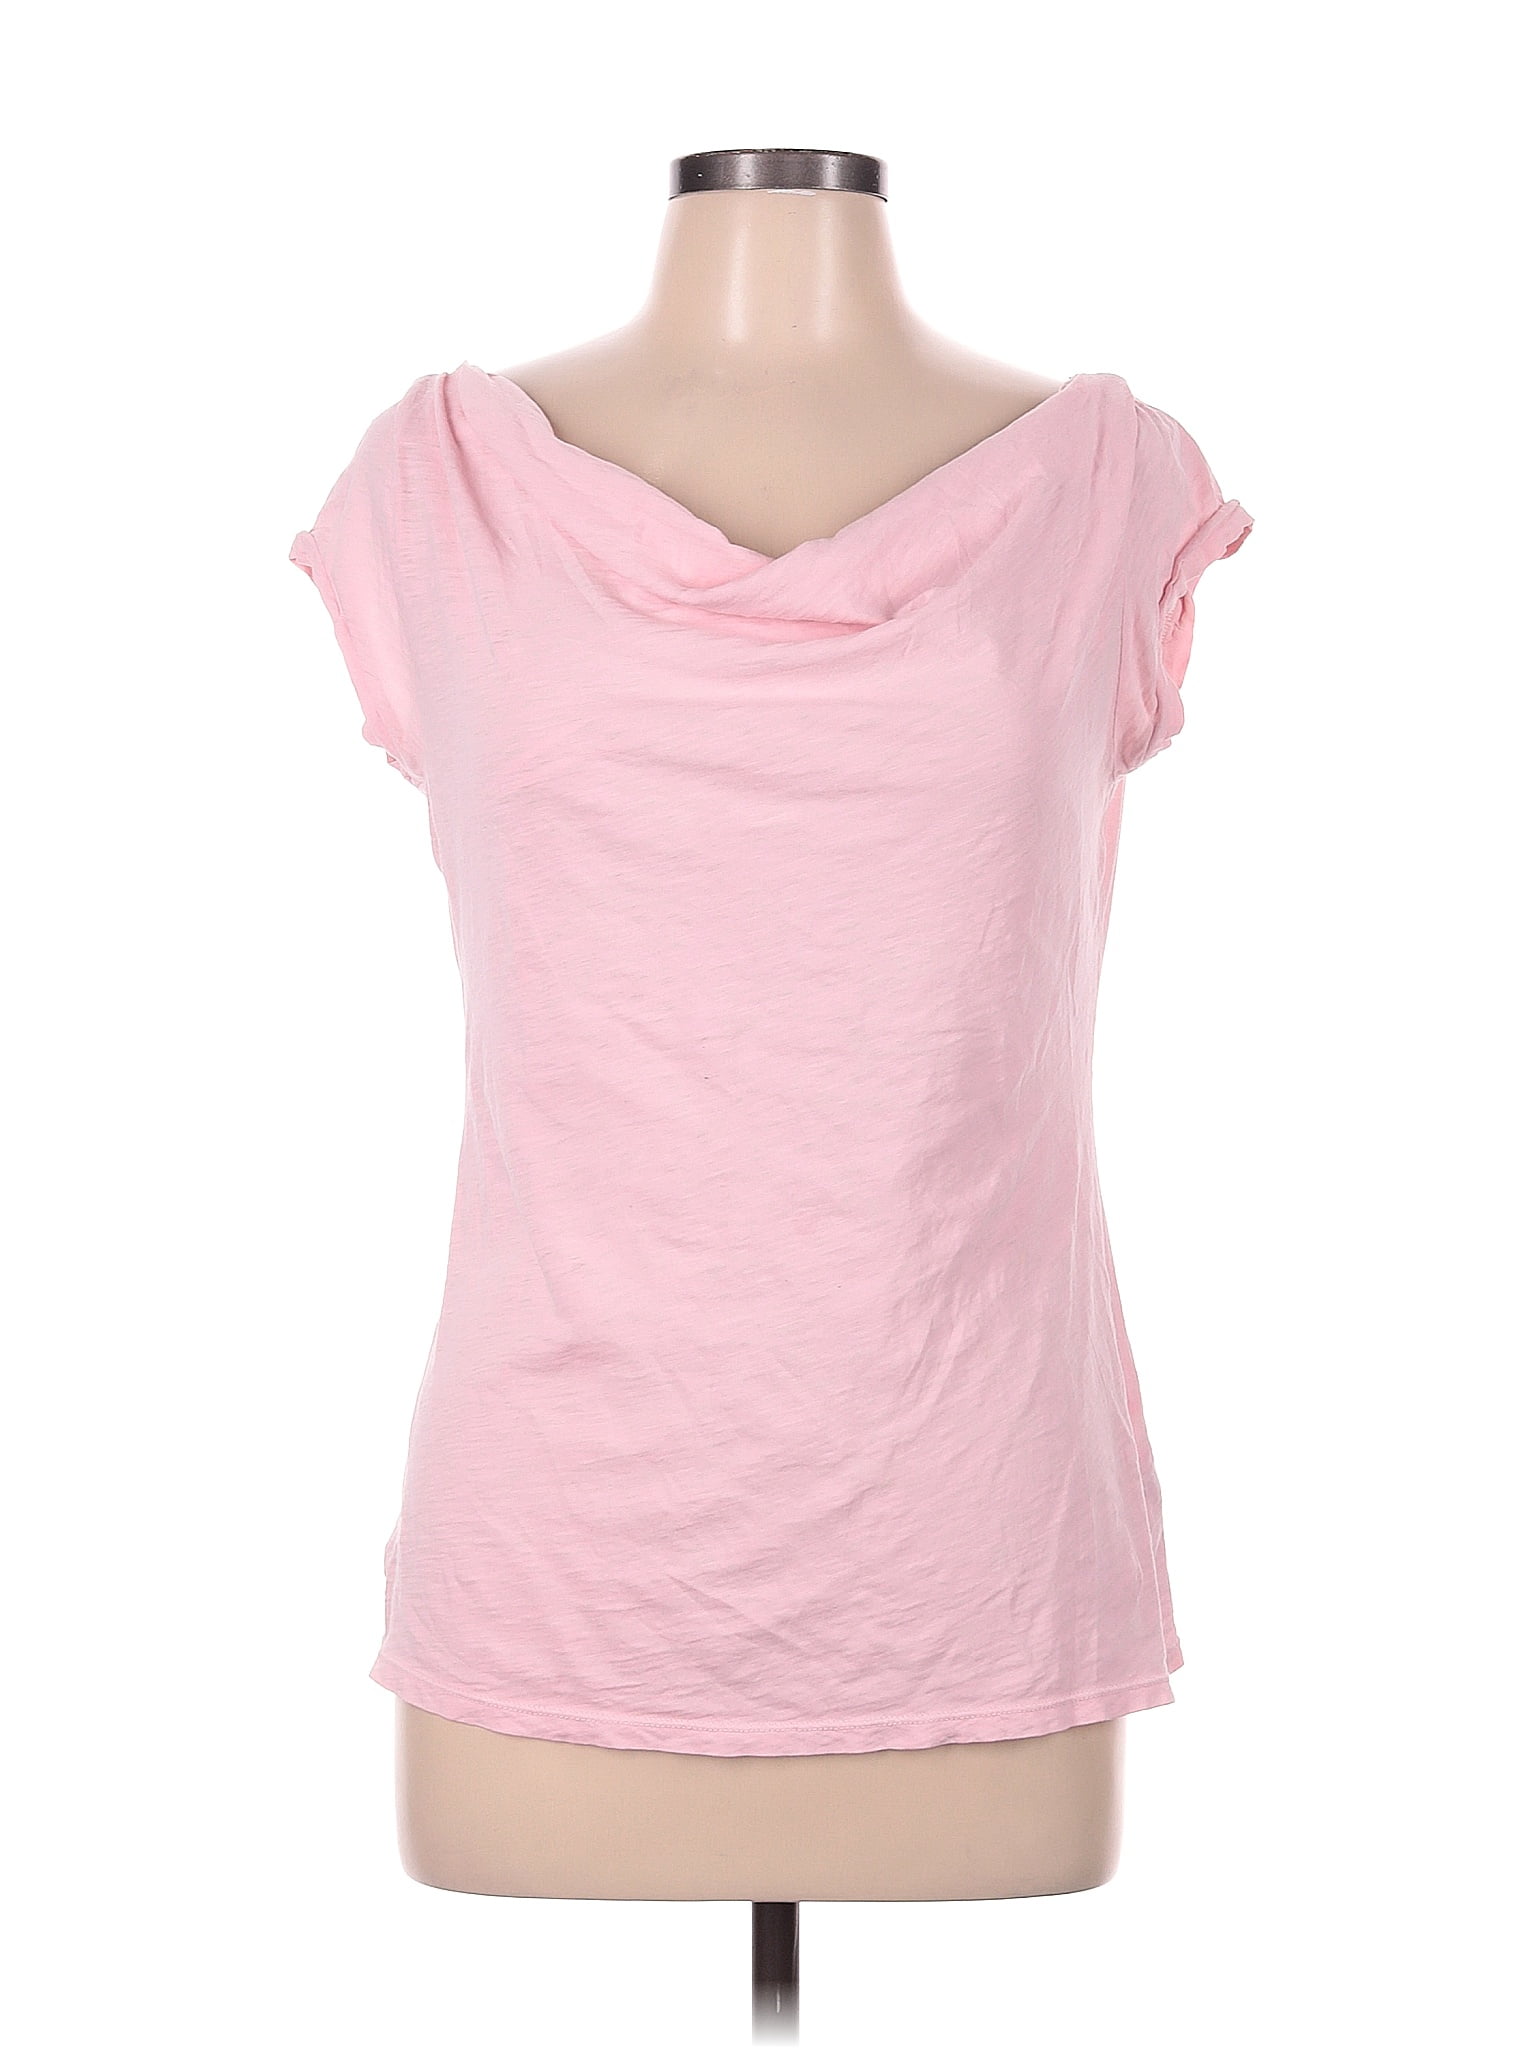 Ralph Lauren 100% Cotton Pink Short Sleeve T-Shirt Size M - 70% off ...